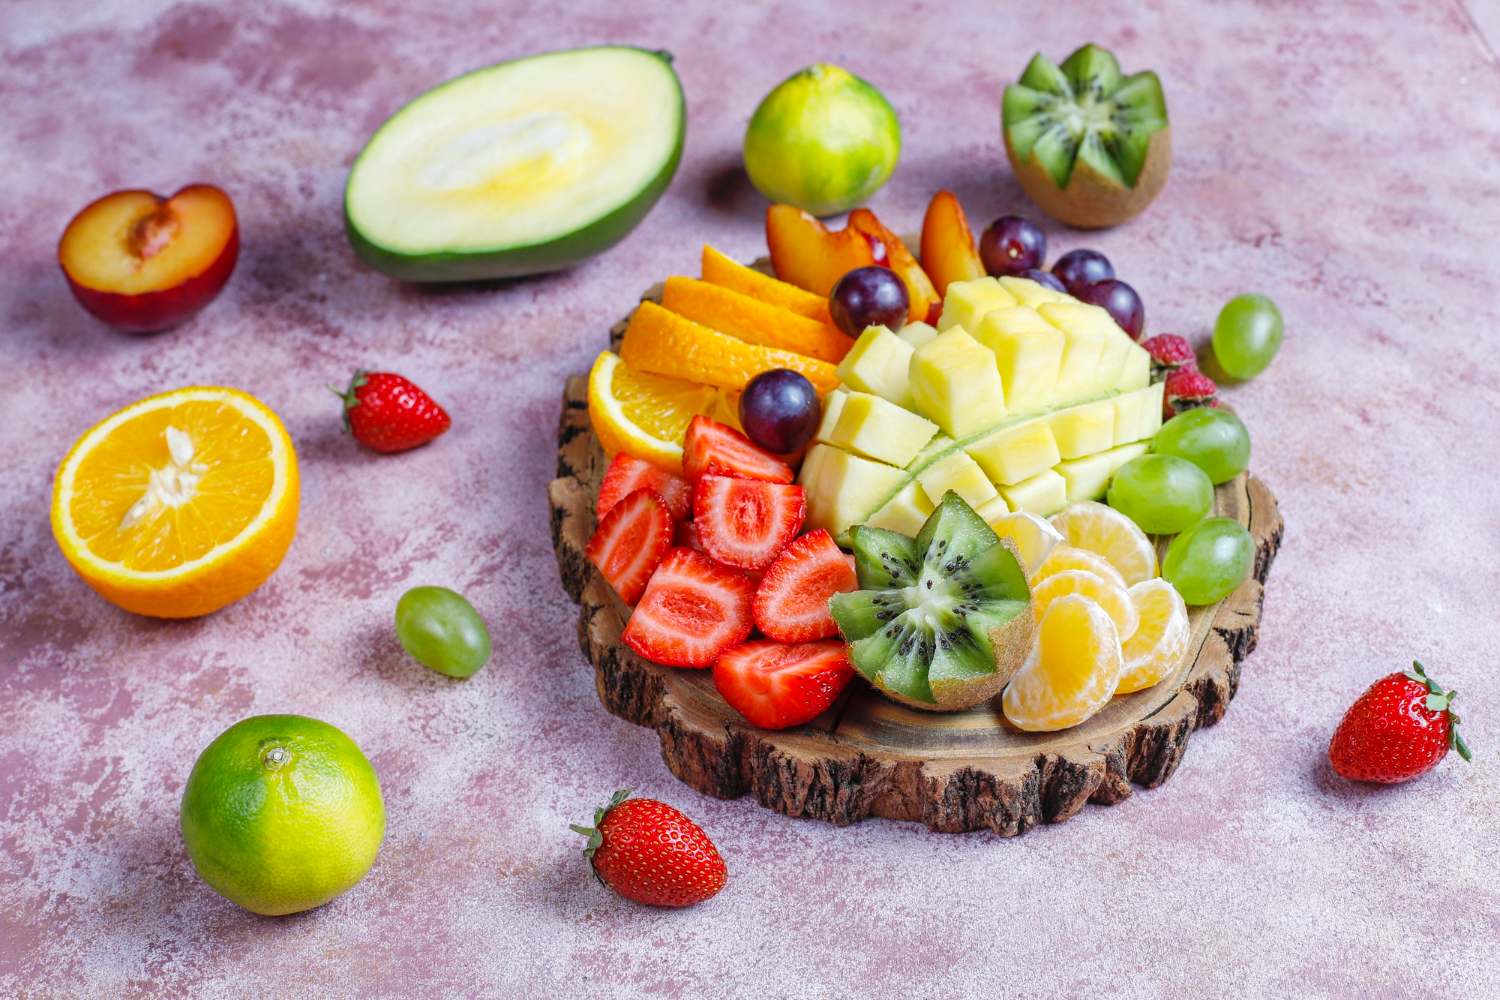 fruits-berries-platter-vegan-cuisine